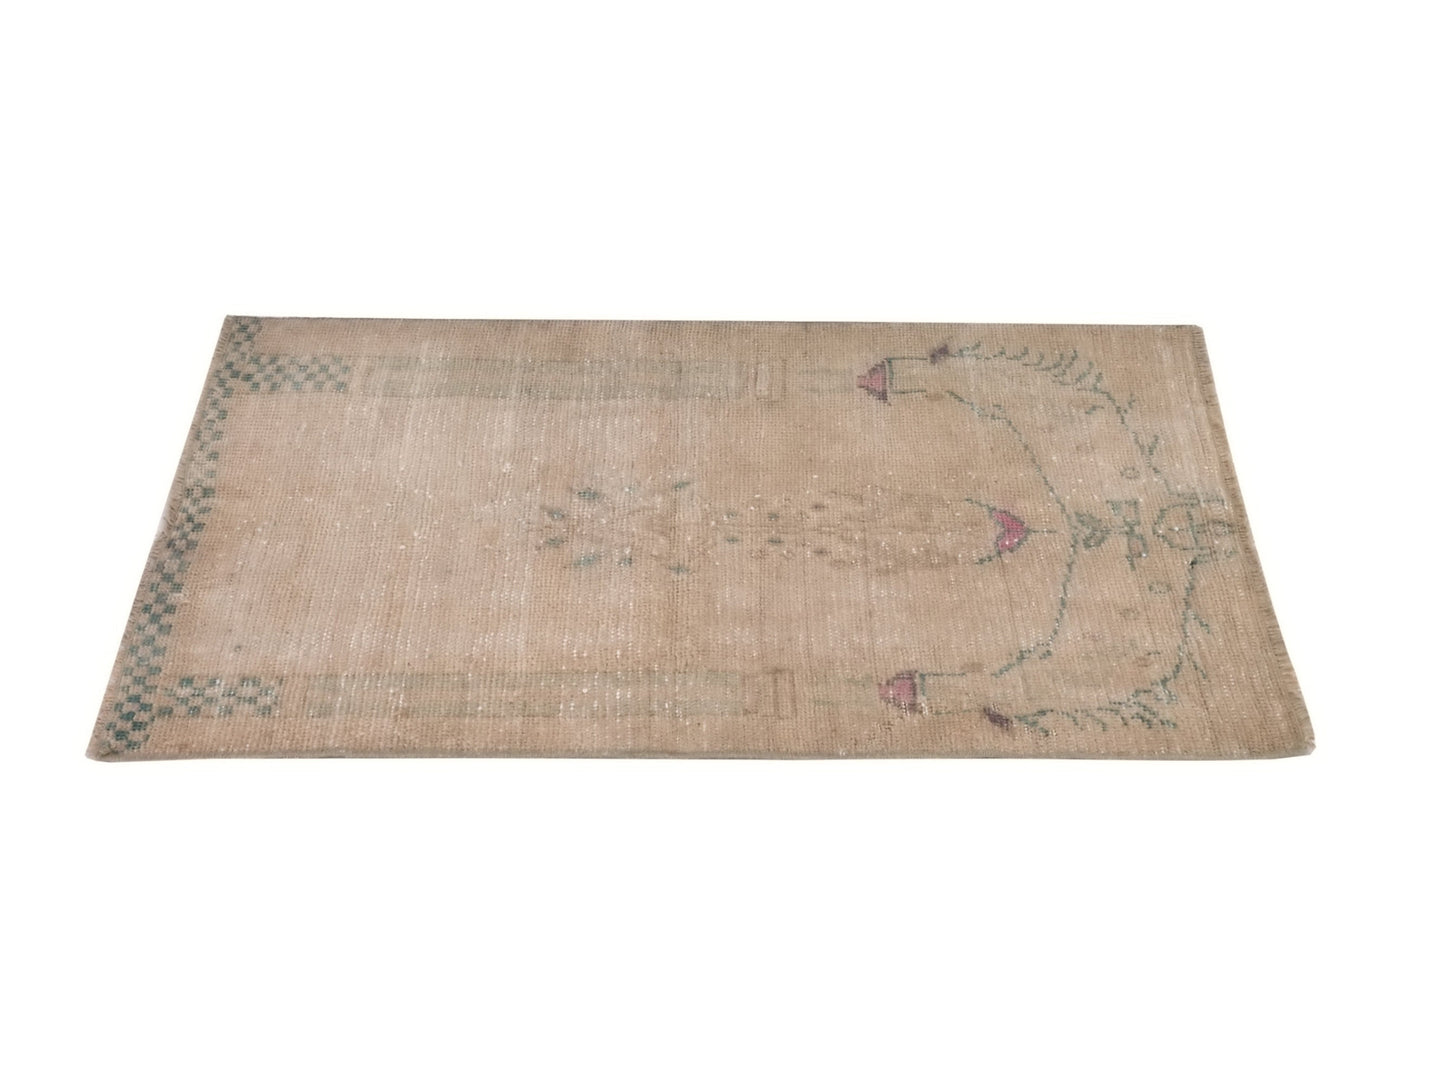 Small Oushak Rug, Vintage Rug, Turkish Rug, 3x3 Rug, Door mat rug, Bath mat rug, Handmade Small Carpet rug, Entrway rug, 8735